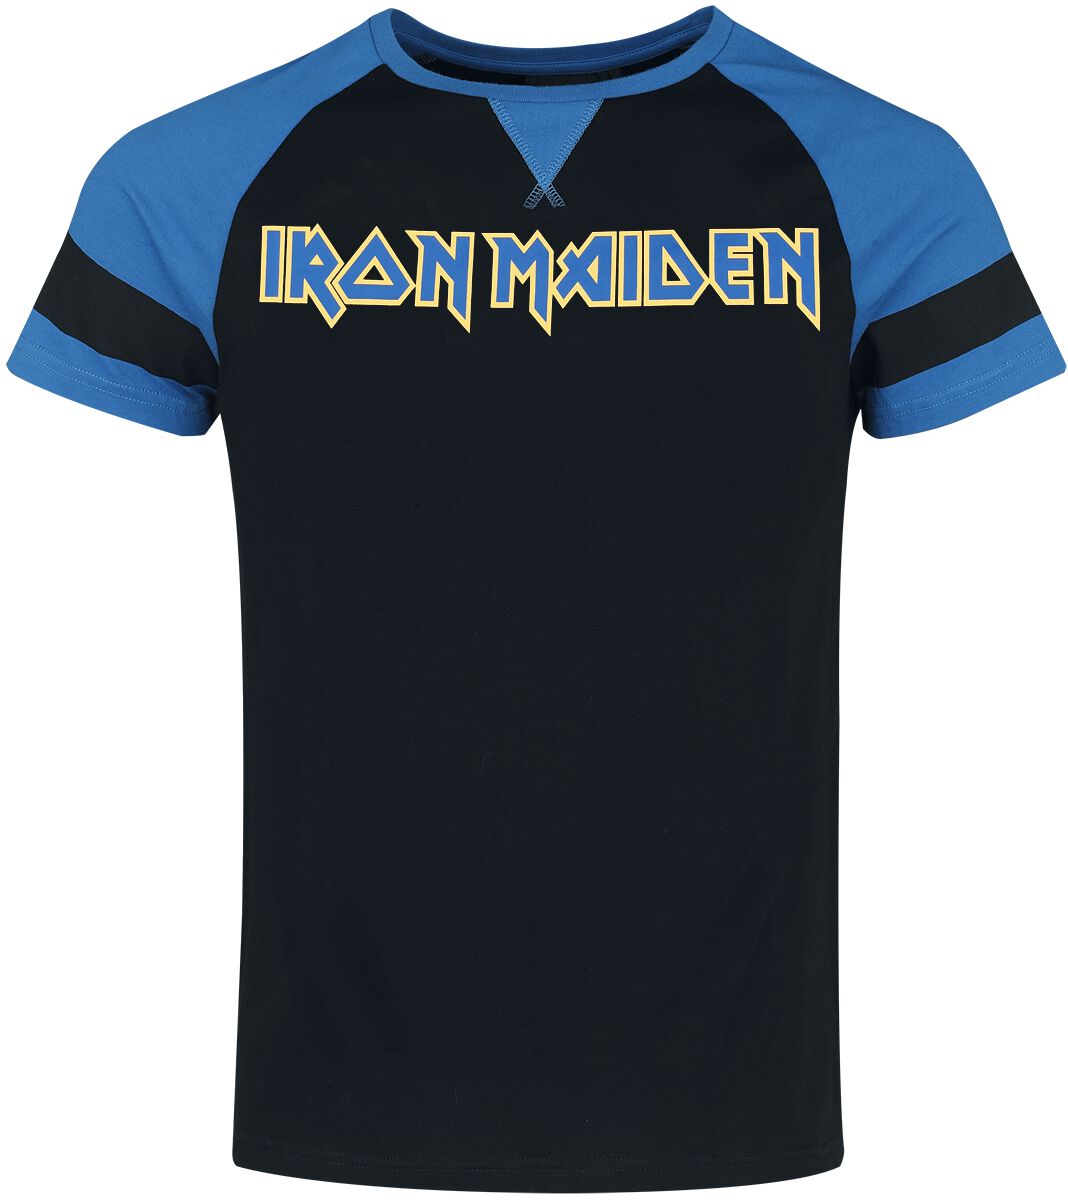 Iron Maiden T-Shirt - S bis XXL - für Männer - Größe S - schwarz/blau  - EMP exklusives Merchandise!